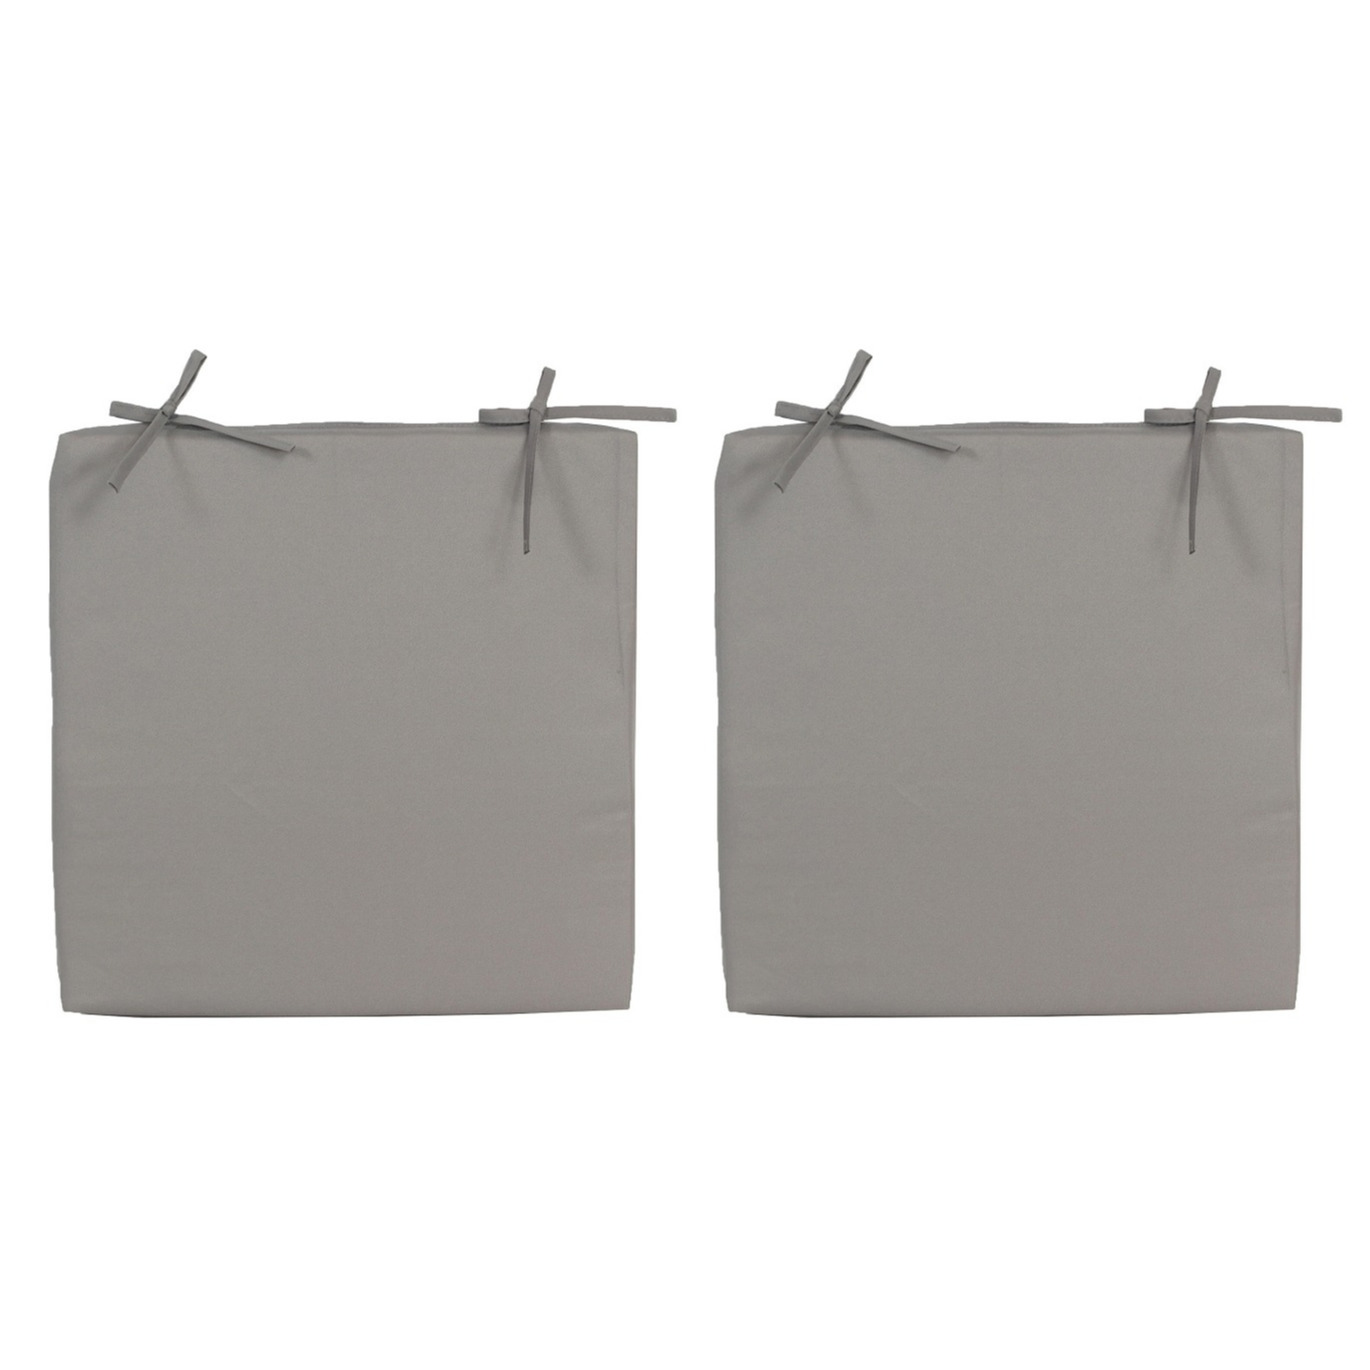 8x stuks stoelkussens voor binnen en buiten in de kleur grijs 40 x 40 cm